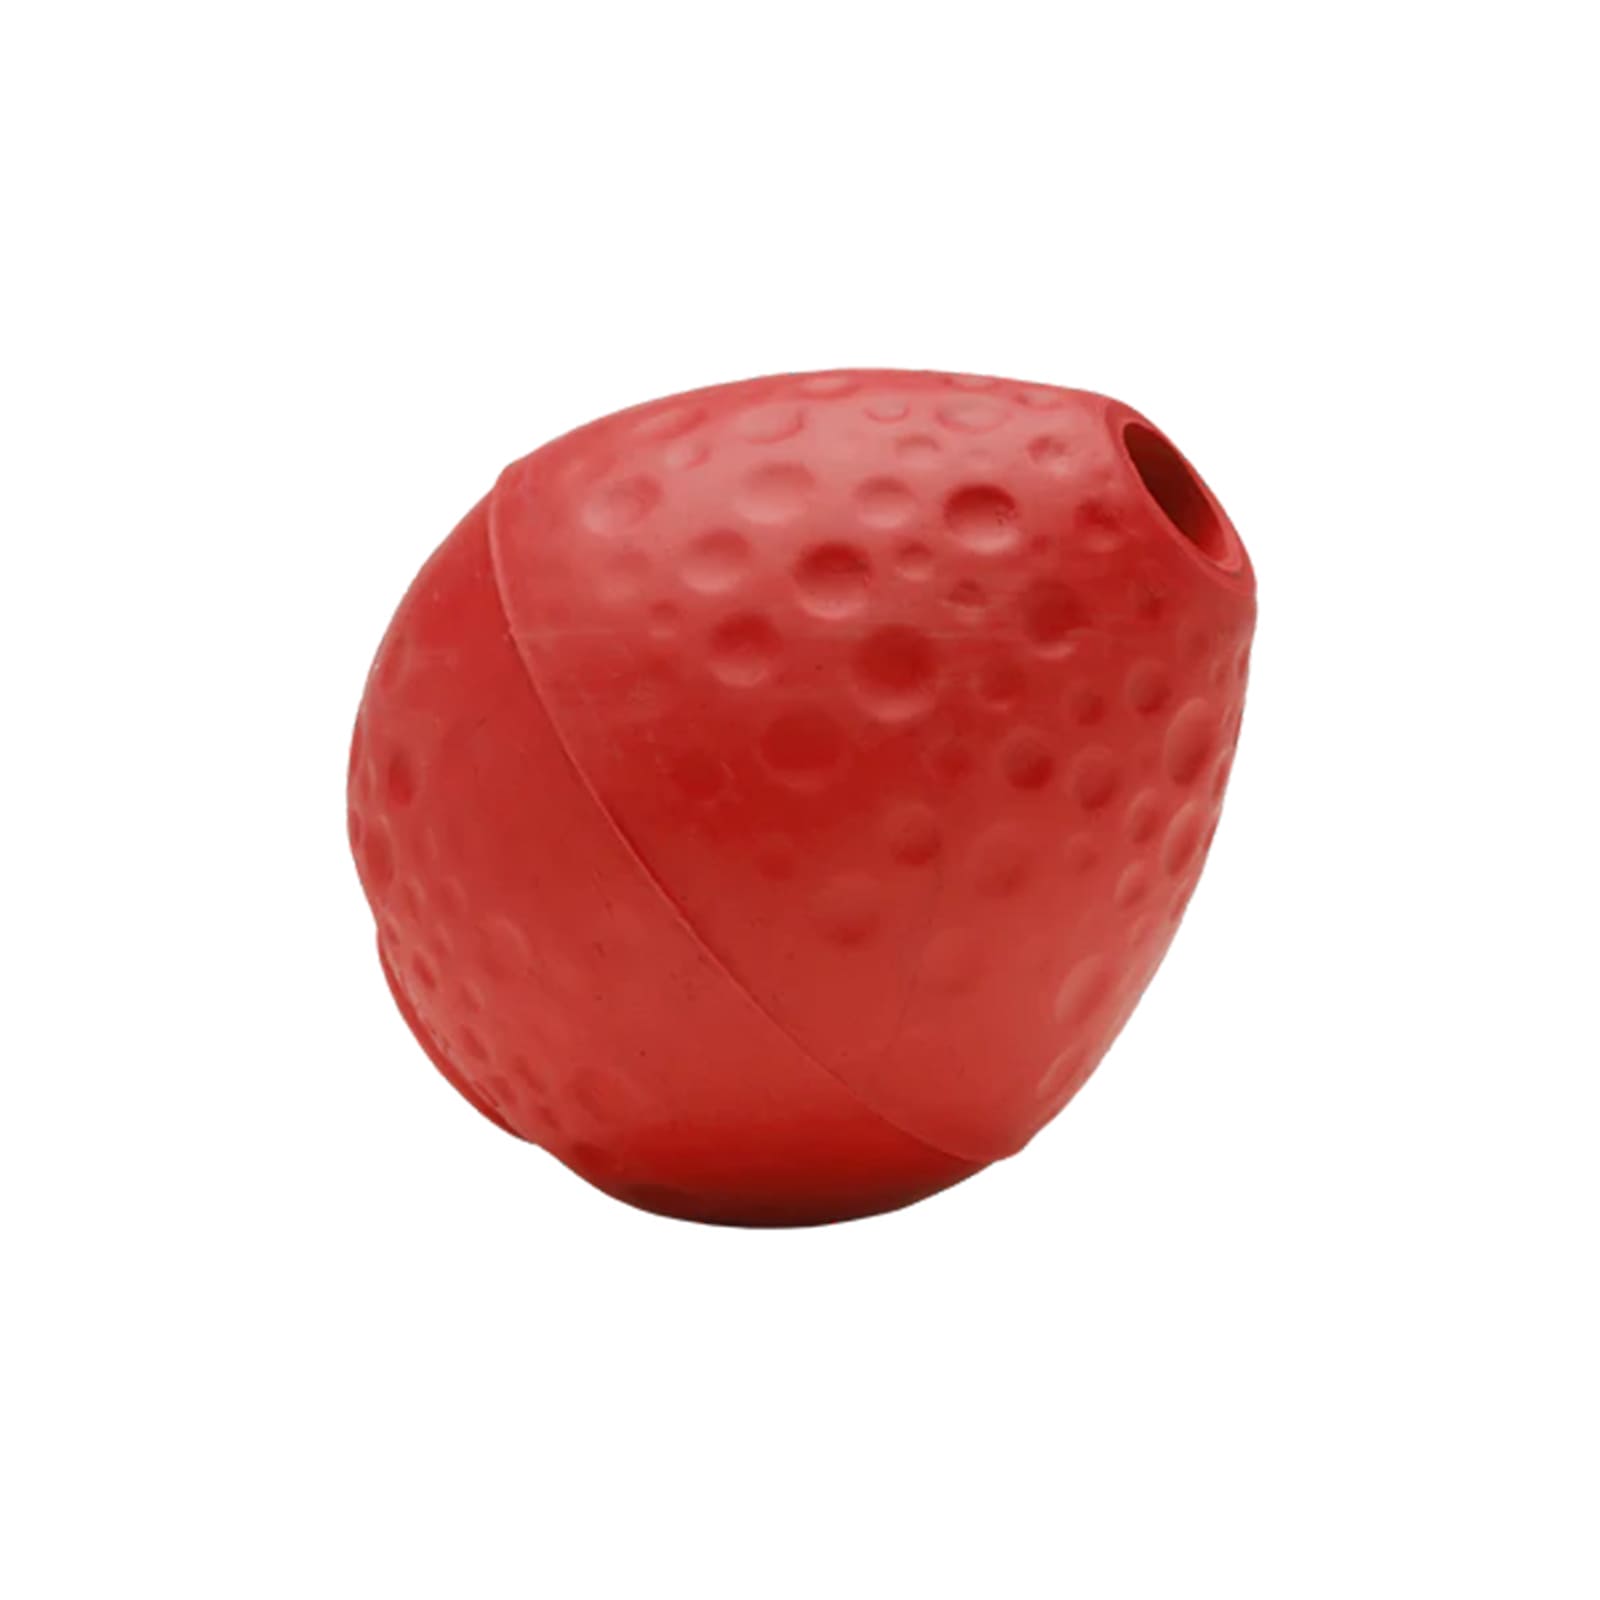 Zitronenförmiges rotes Spielzeug mit Loch